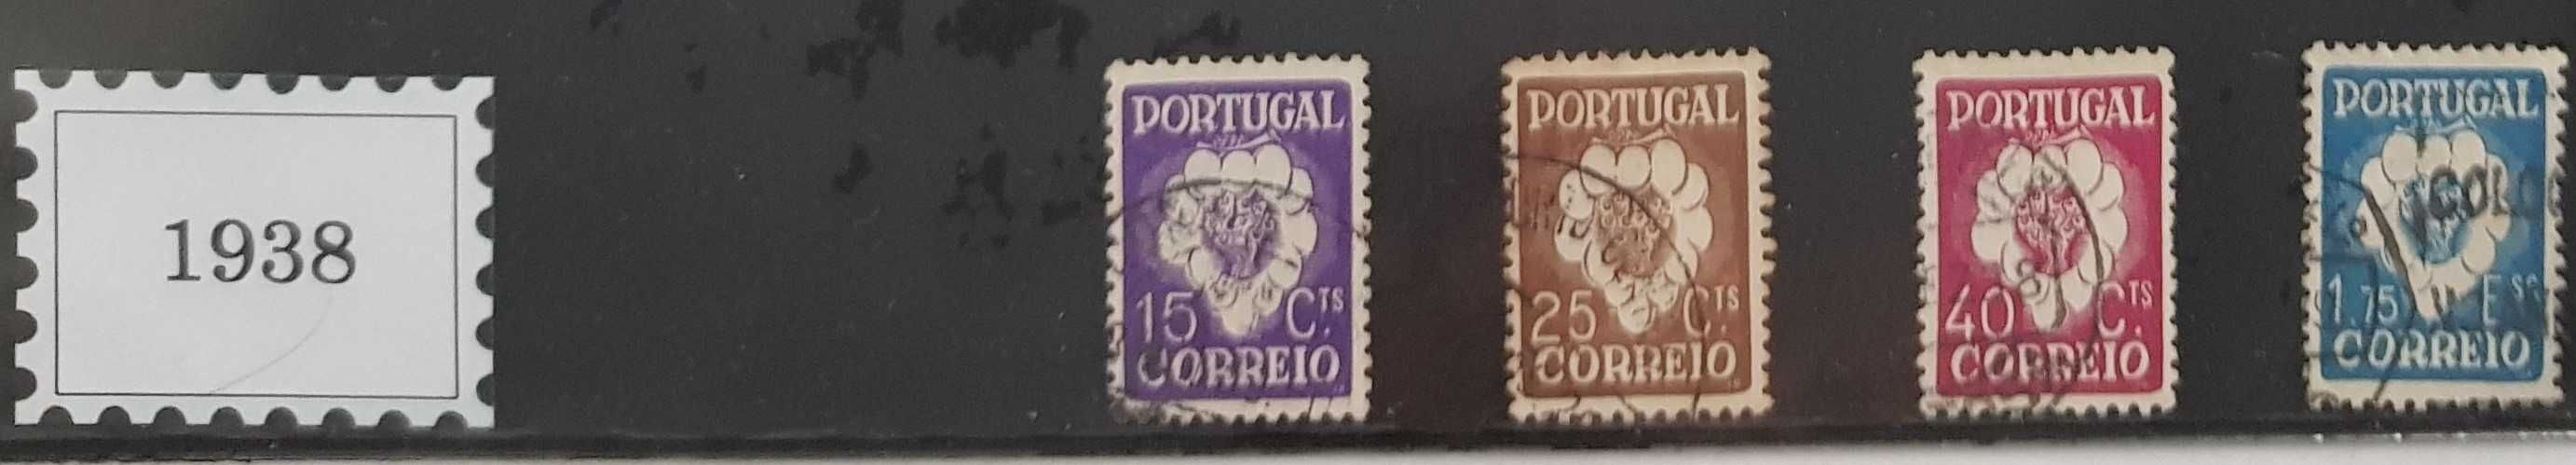 Selos Portugal - 5.° Congresso I nternacional da Vinha e do Vinho